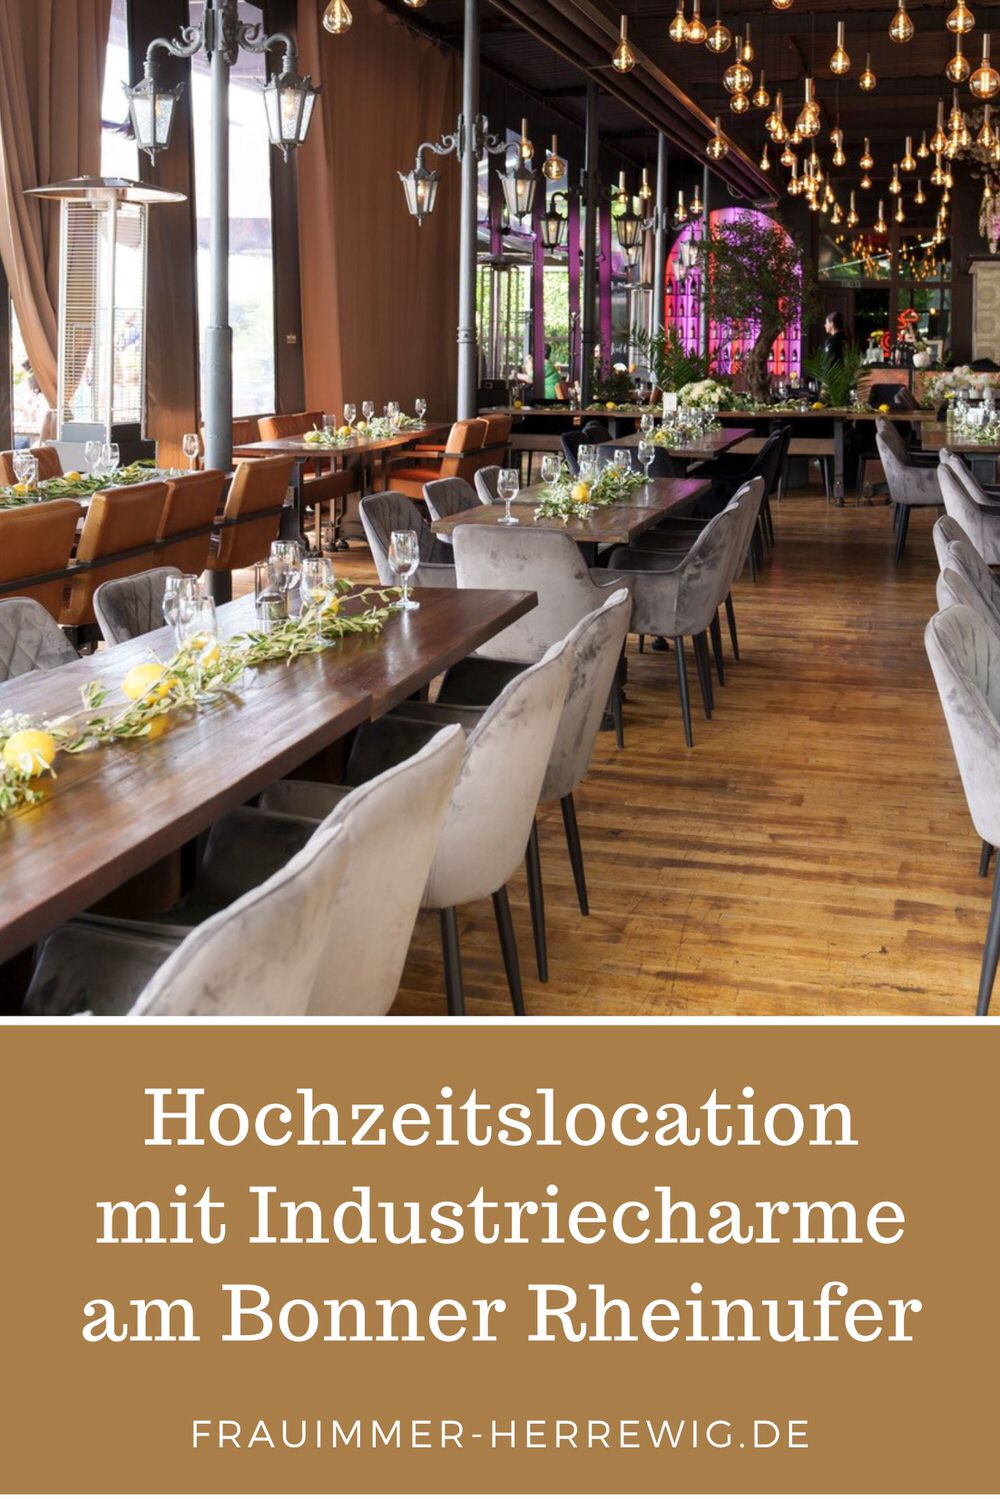 Hochzeitslocation bahnhoefchen bonn – gesehen bei frauimmer-herrewig.de